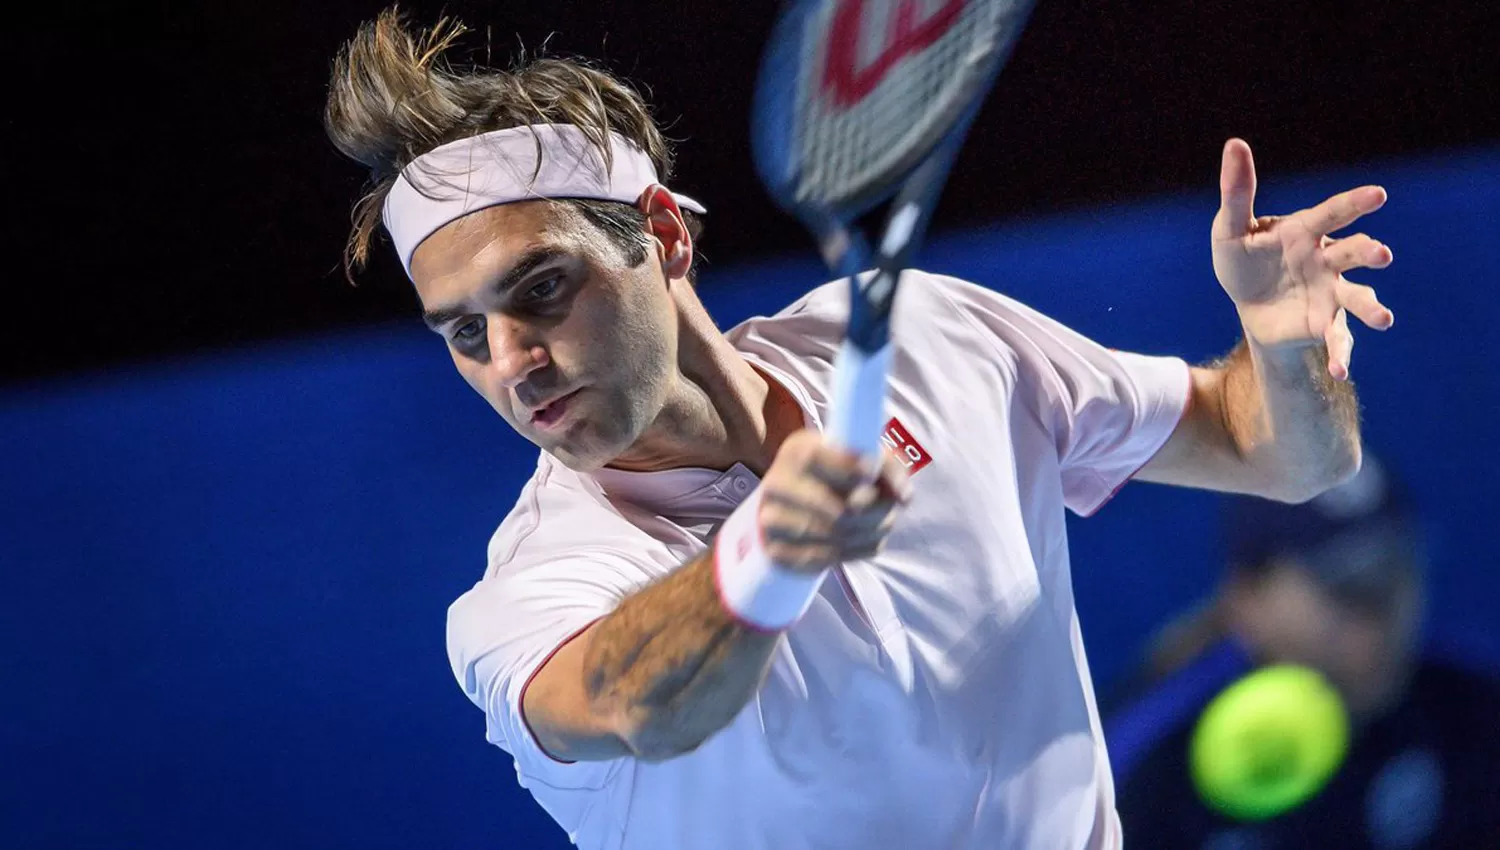 IMPARABLE. Federer se consagró campeón en Basilea.